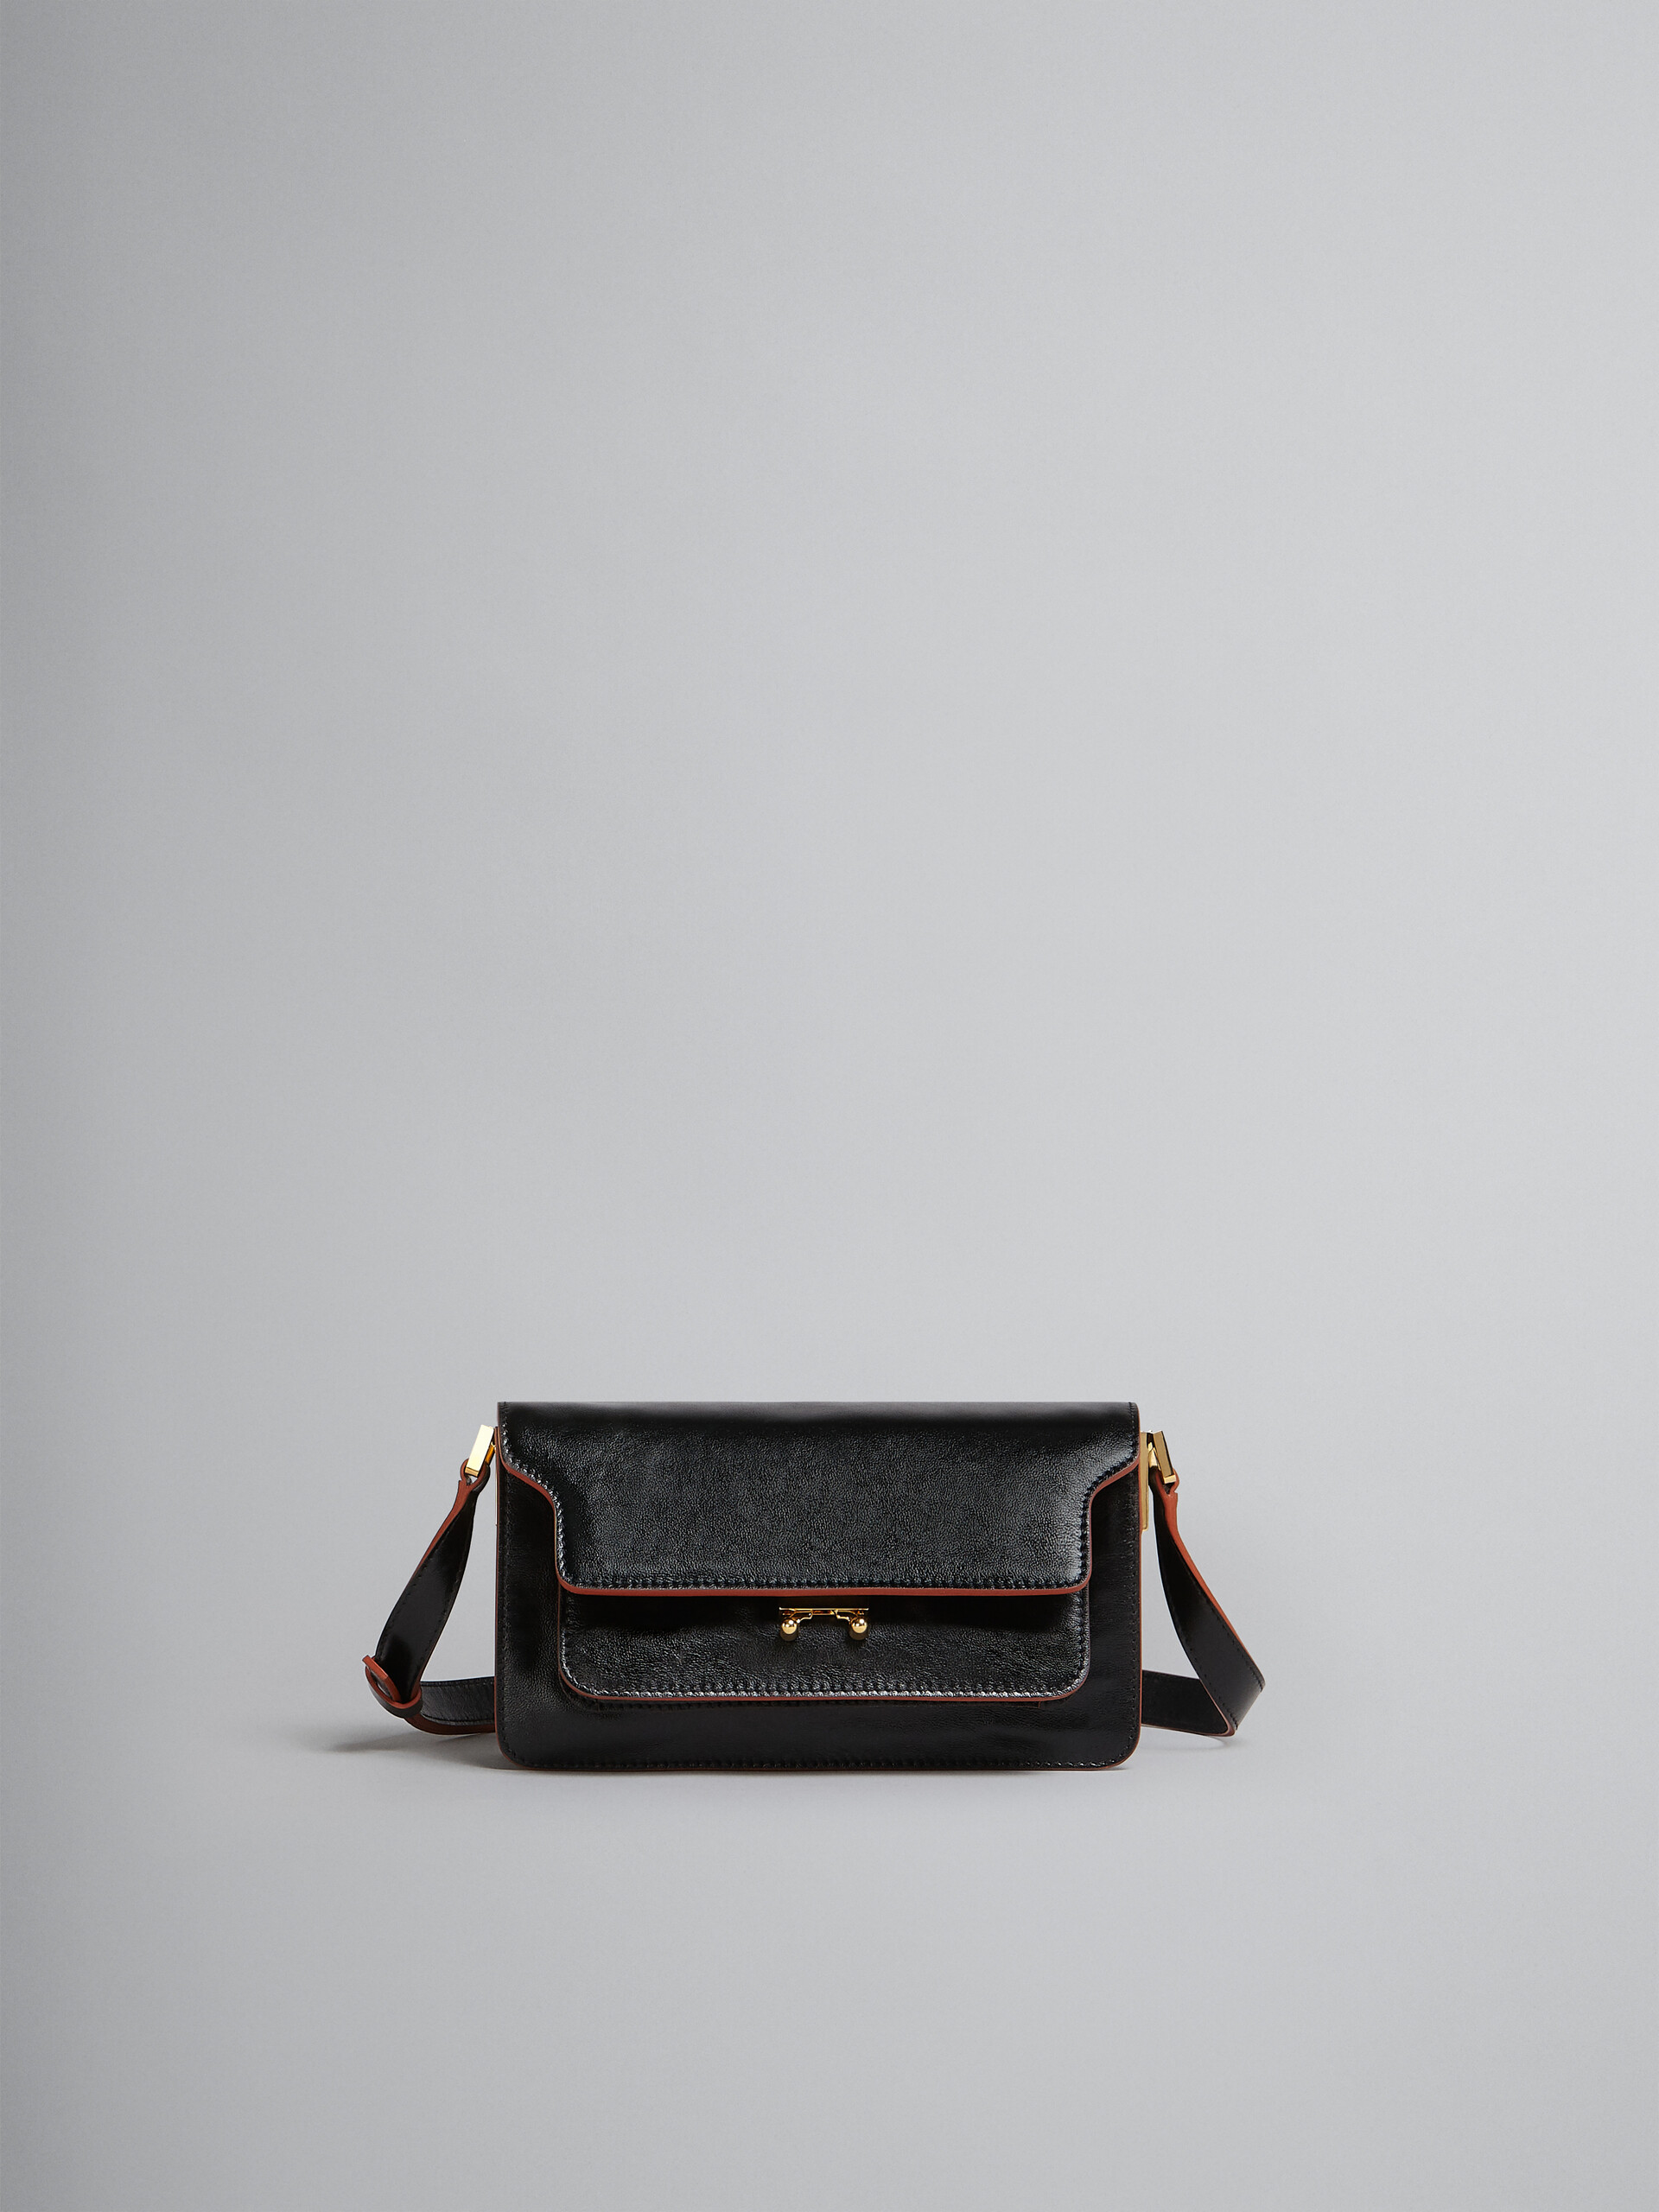 Trunk Soft Bag E/W in pelle nera - Borse a spalla - Image 1